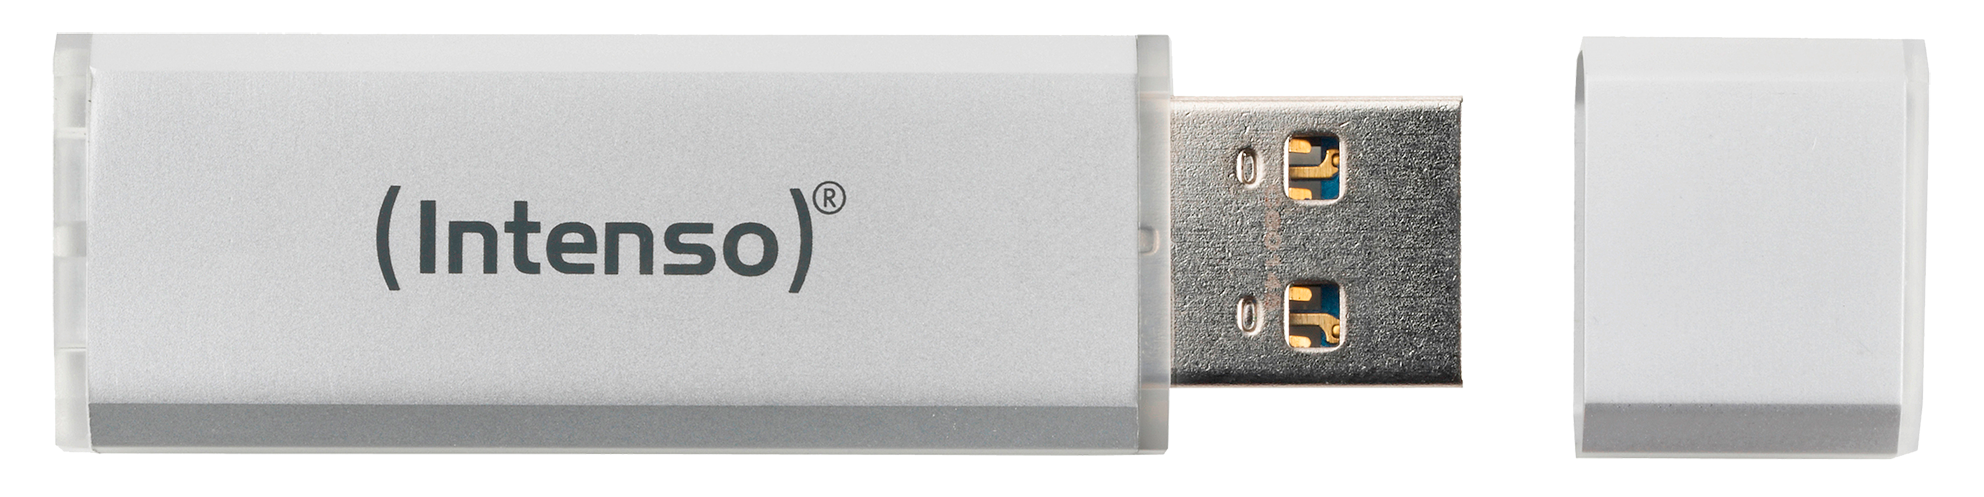 MB/s, INTENSO 128 Ultra GB, 35 Line USB-Stick, Silber